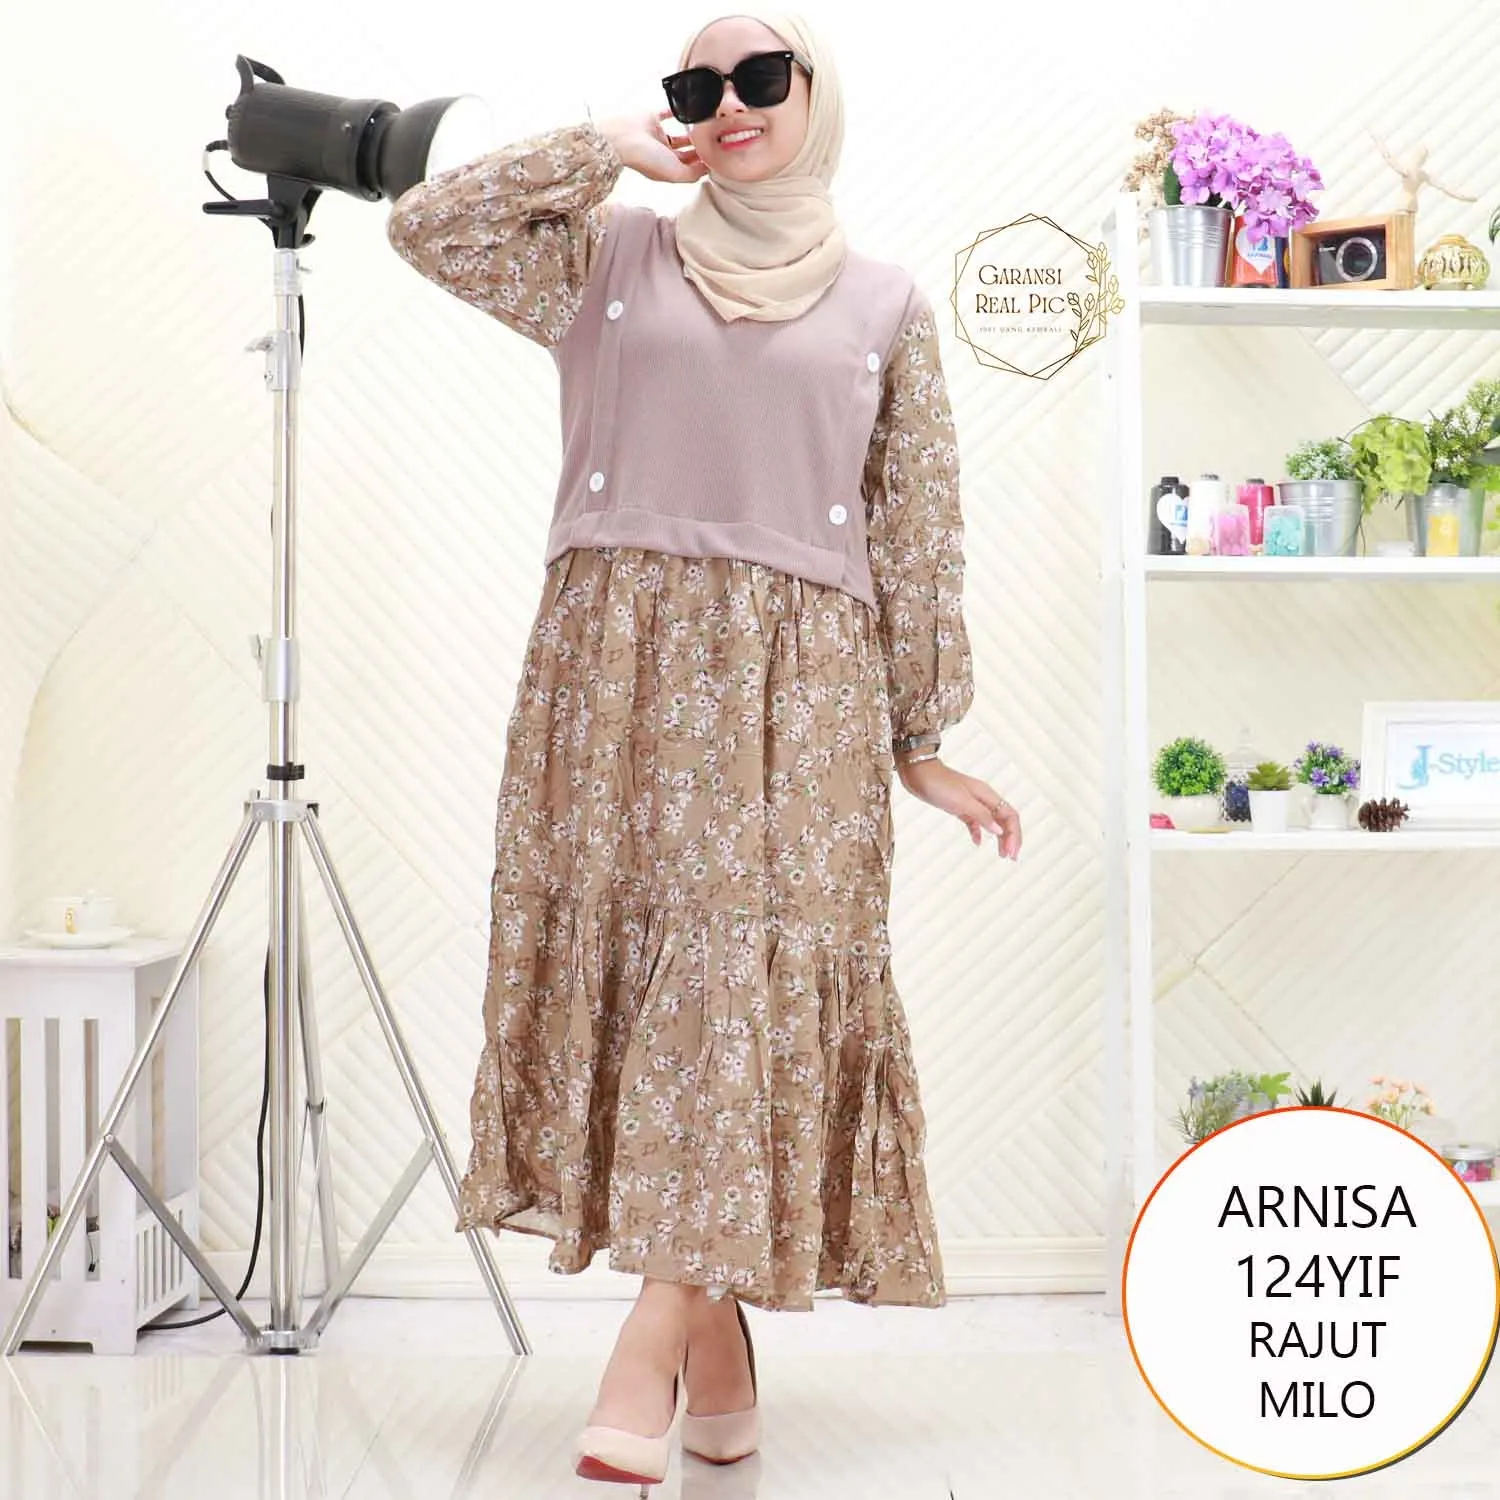 Arnisa Midi Dress Rajut Tebal Variasi Kancing Mix Rayon Motif